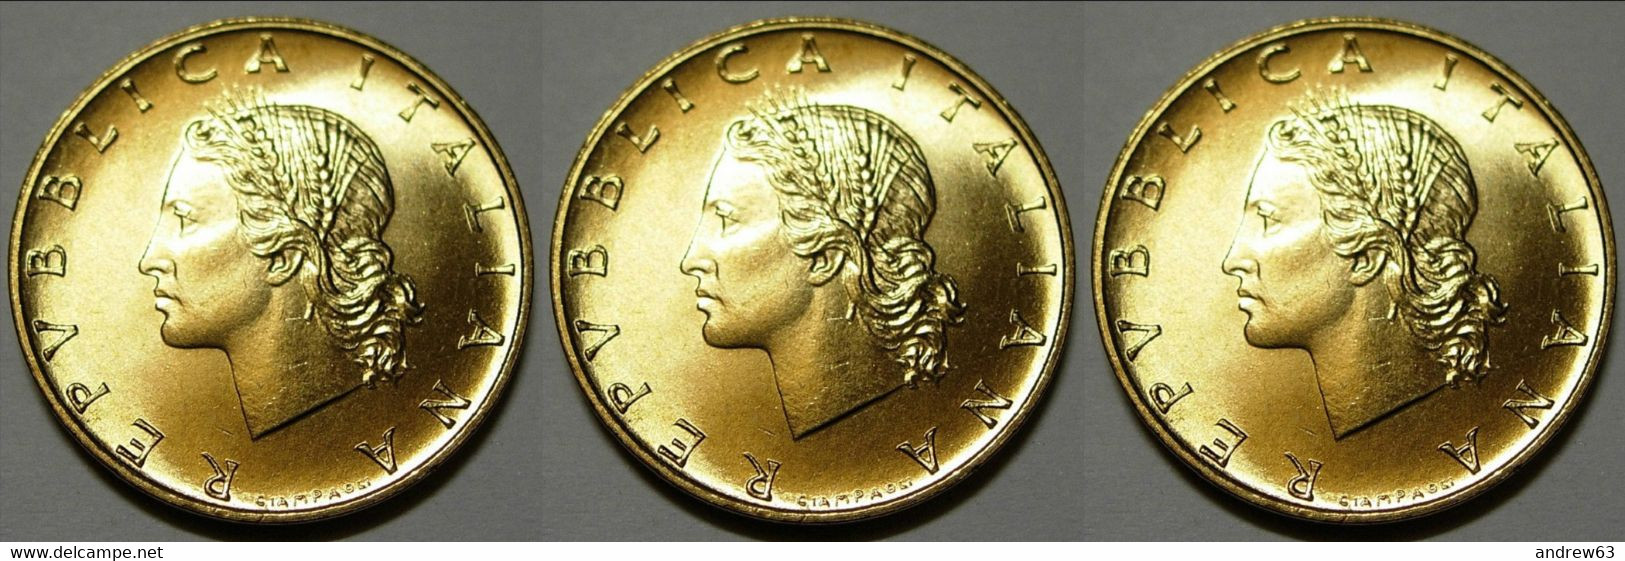 ITALIA - Lire 20 1990 - FDC/Unc Da Rotolino/from Roll 3 Monete/3 Coins - 20 Lire